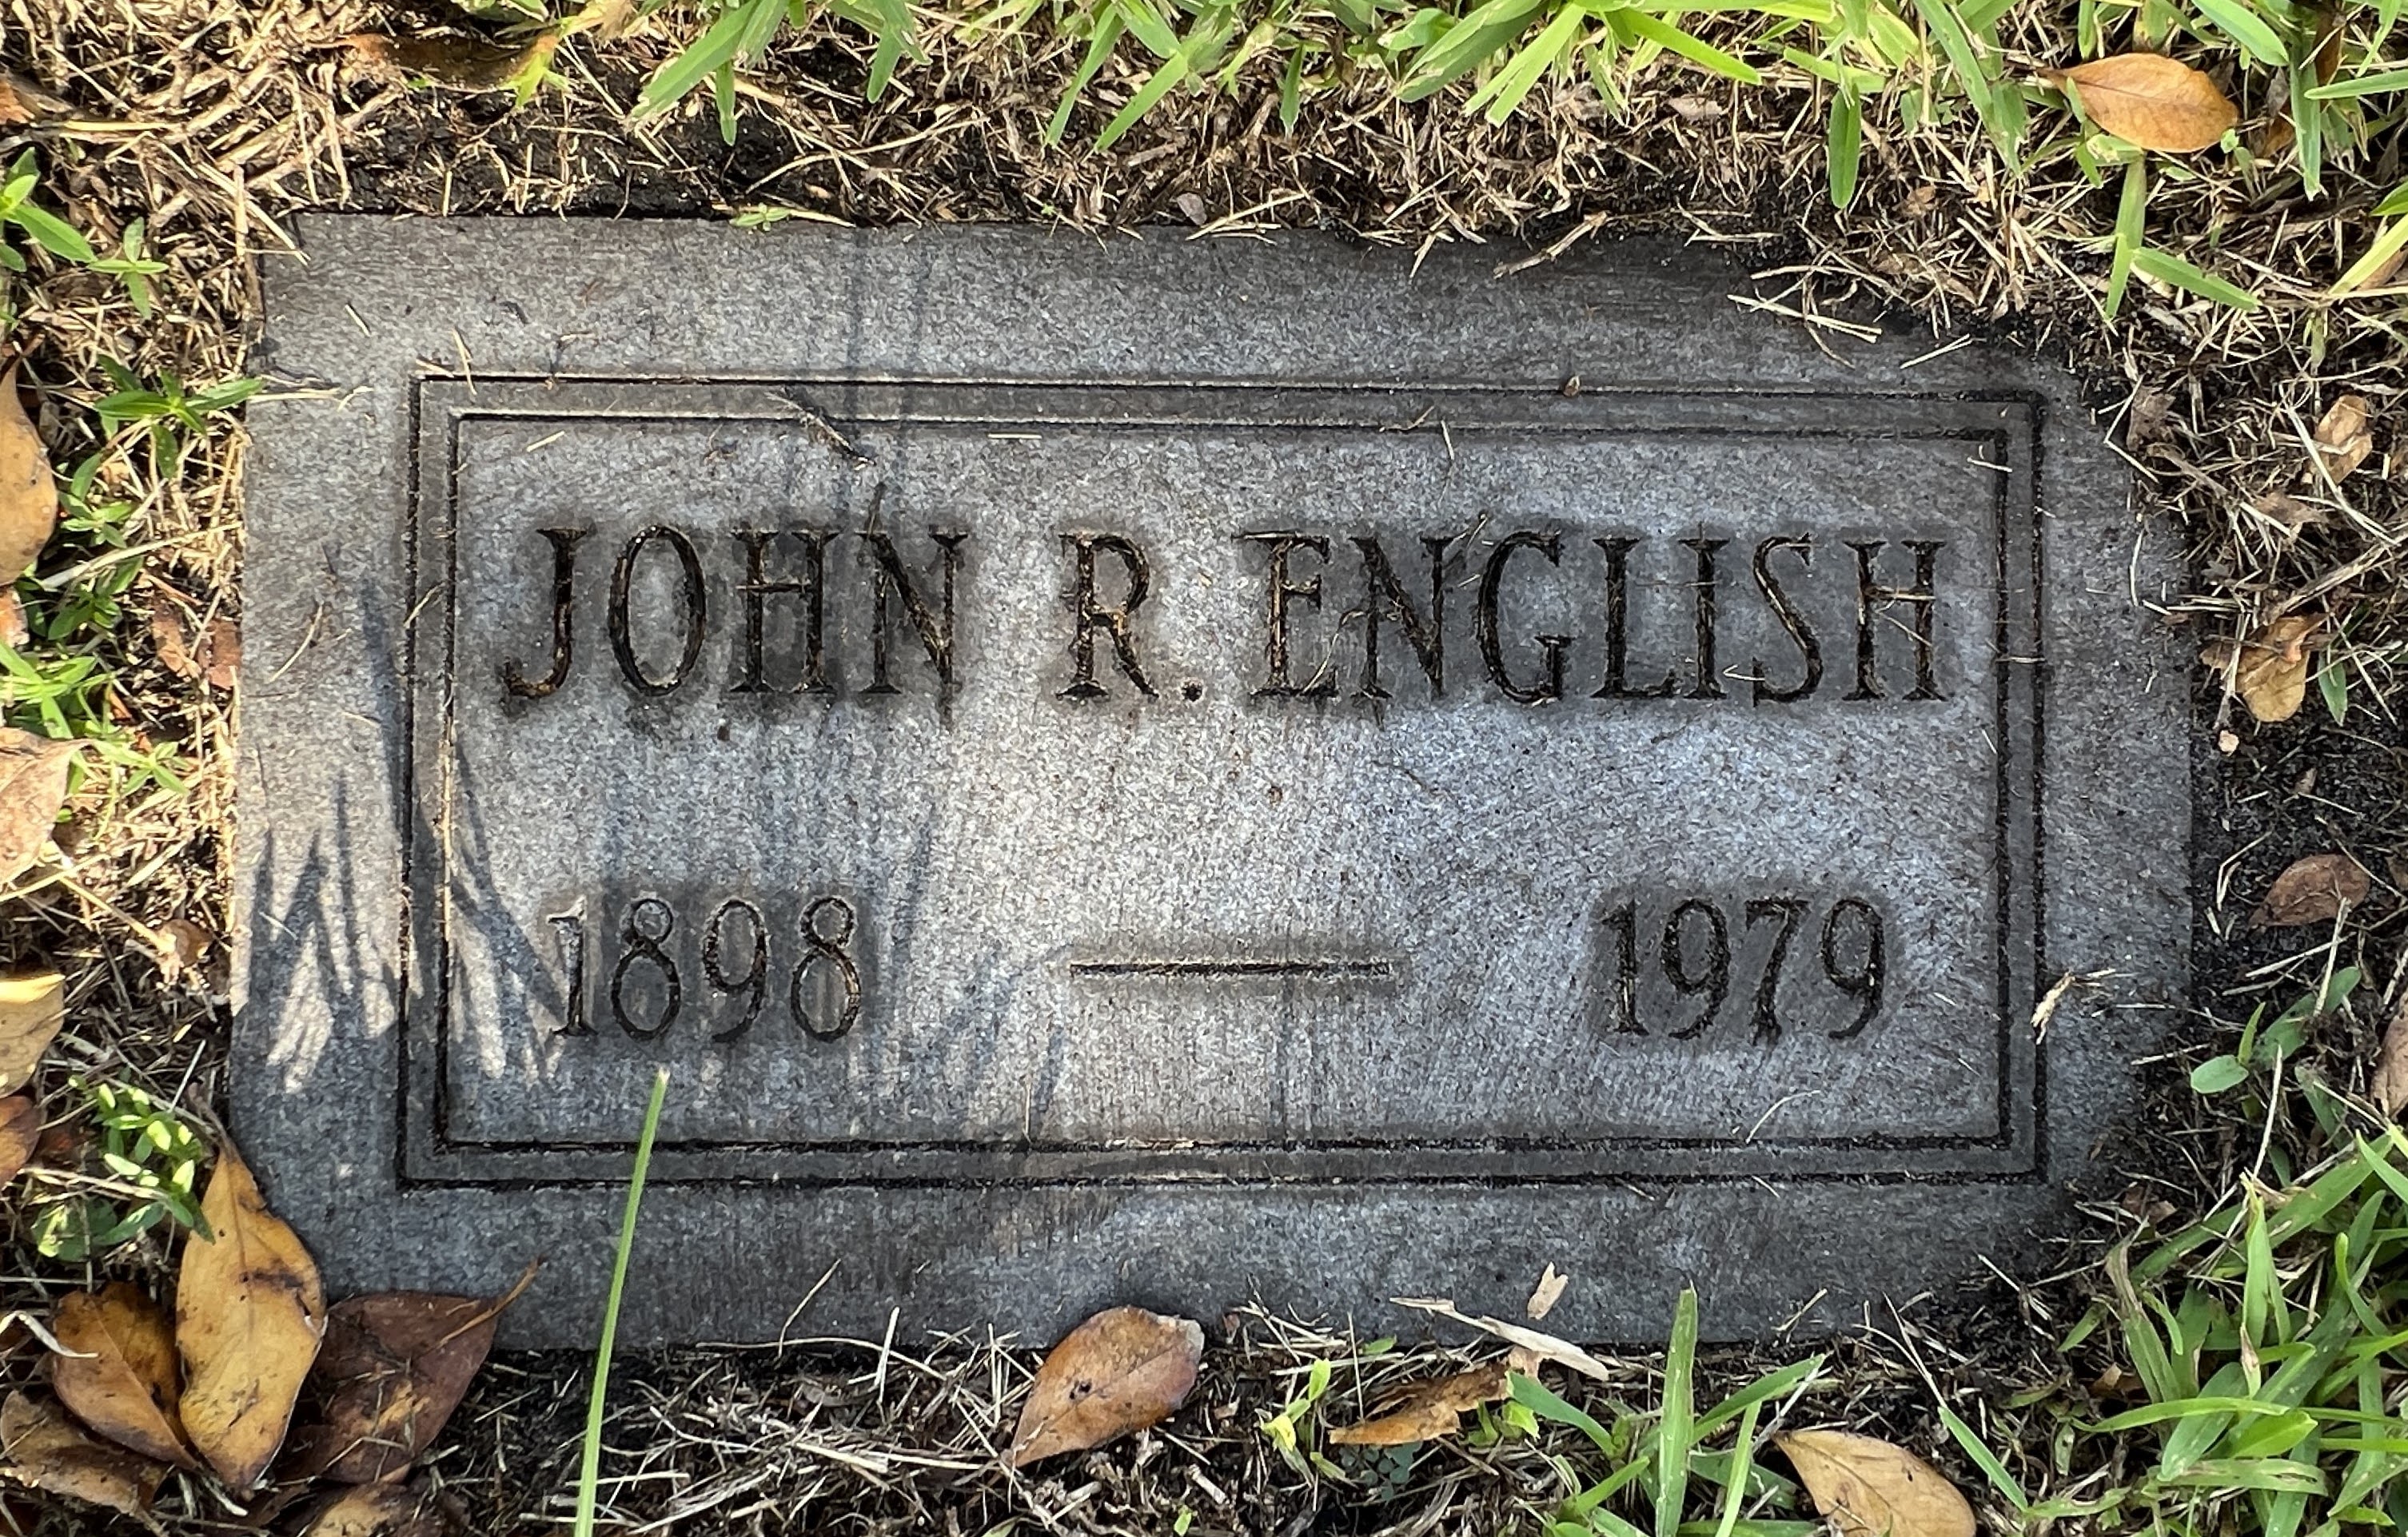 John R English